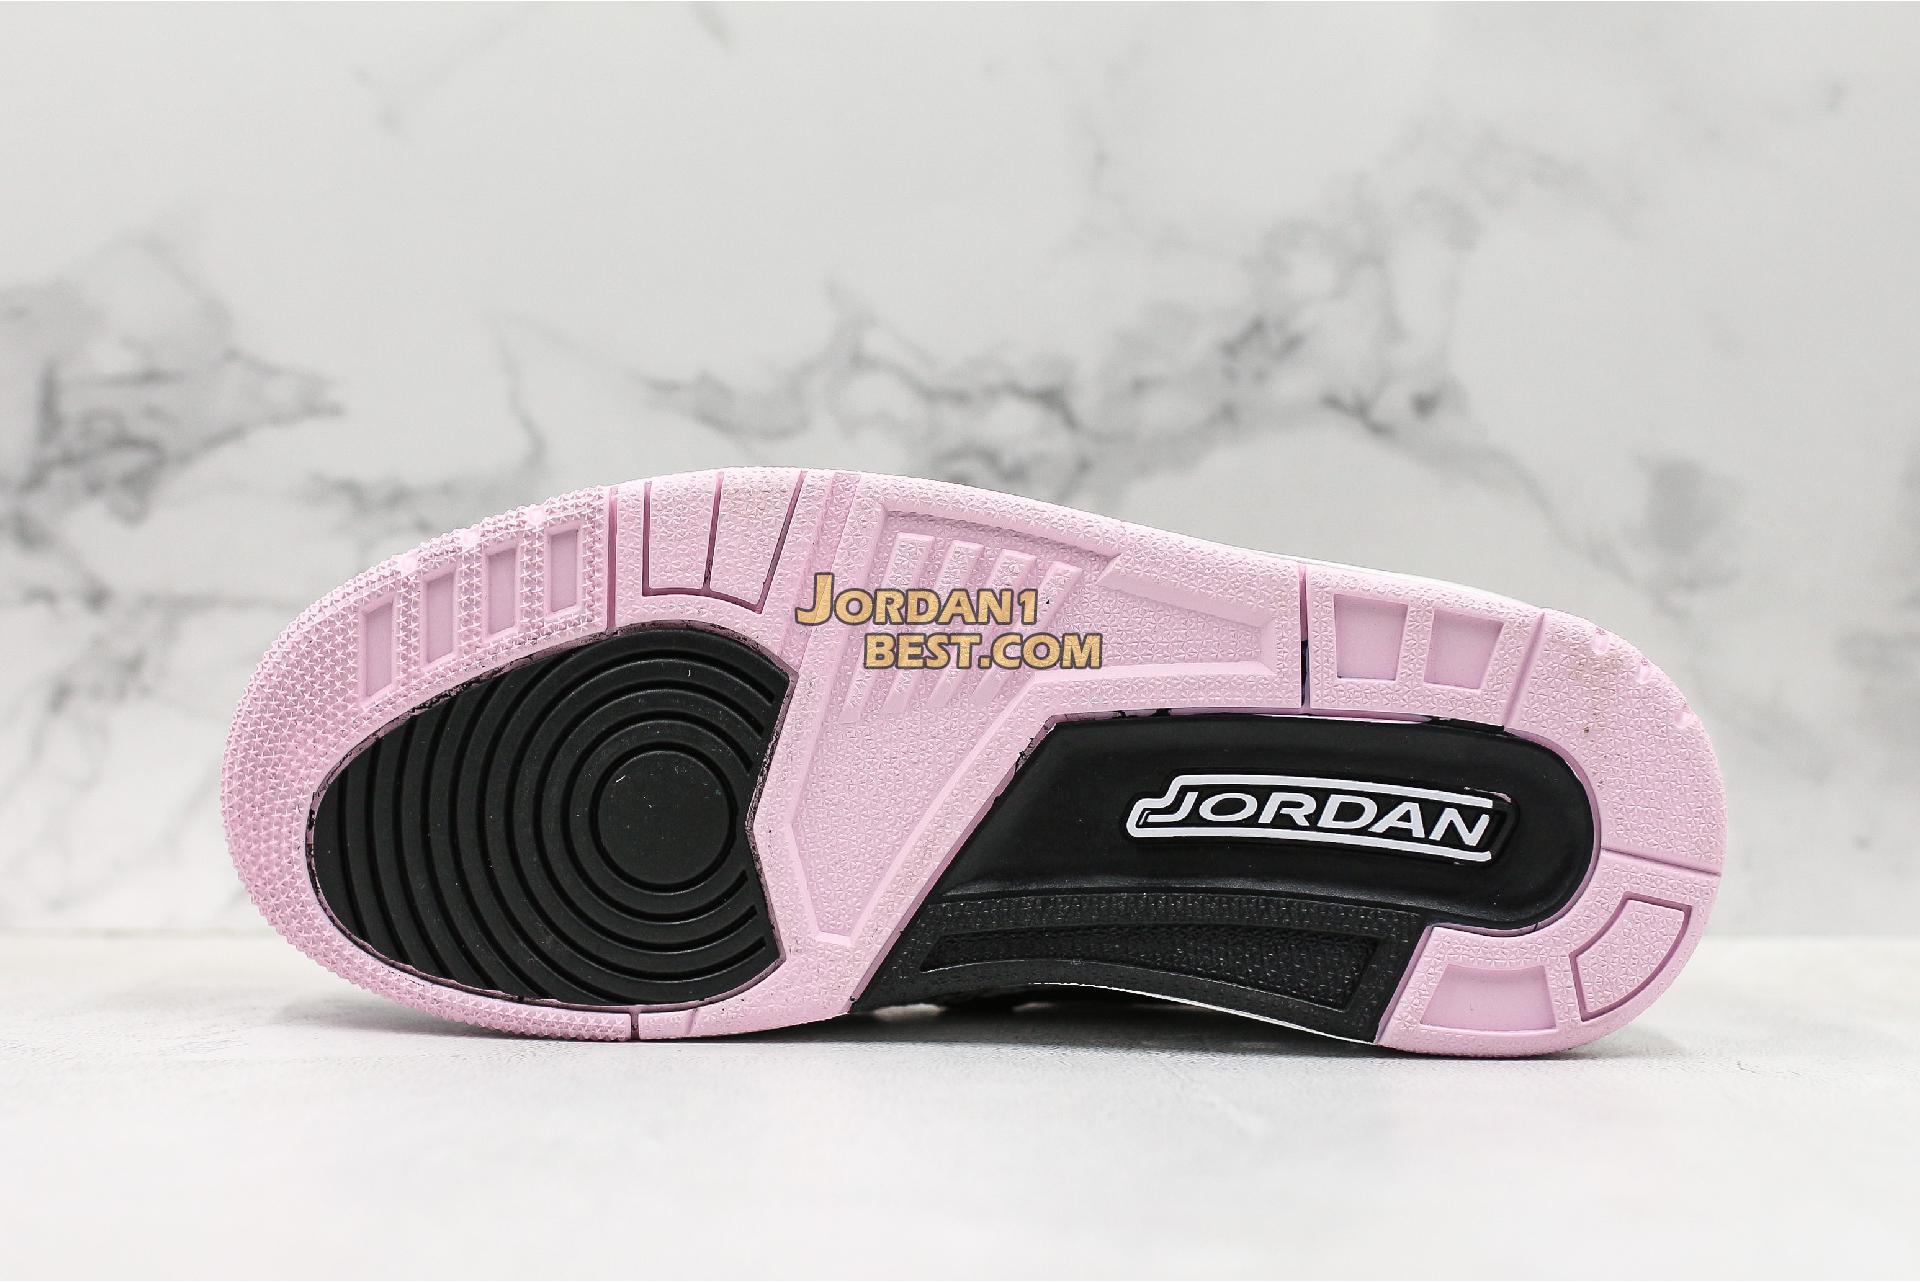 Air Jordan Legacy 312 Low "White Black Pink Foam" AT4047-106 Womens